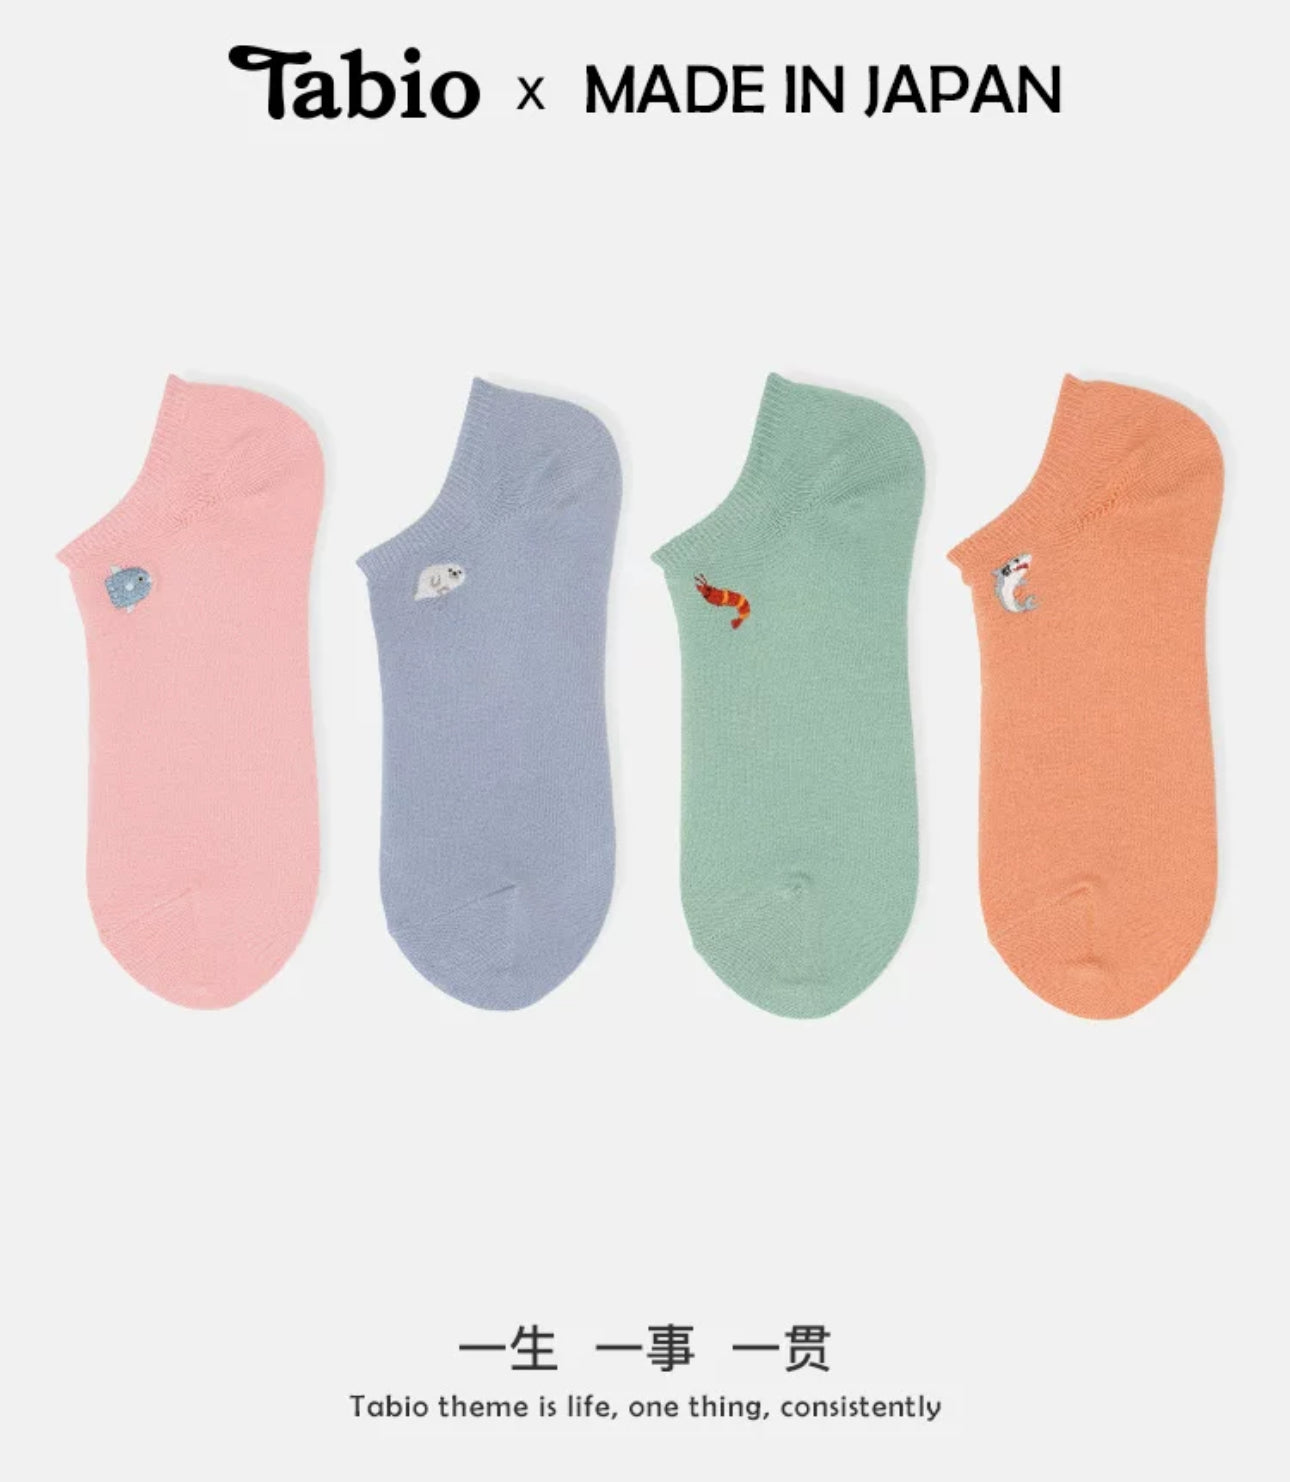 靴下屋Tabio海洋动物图案刺绣舒适低帮袜 17色选